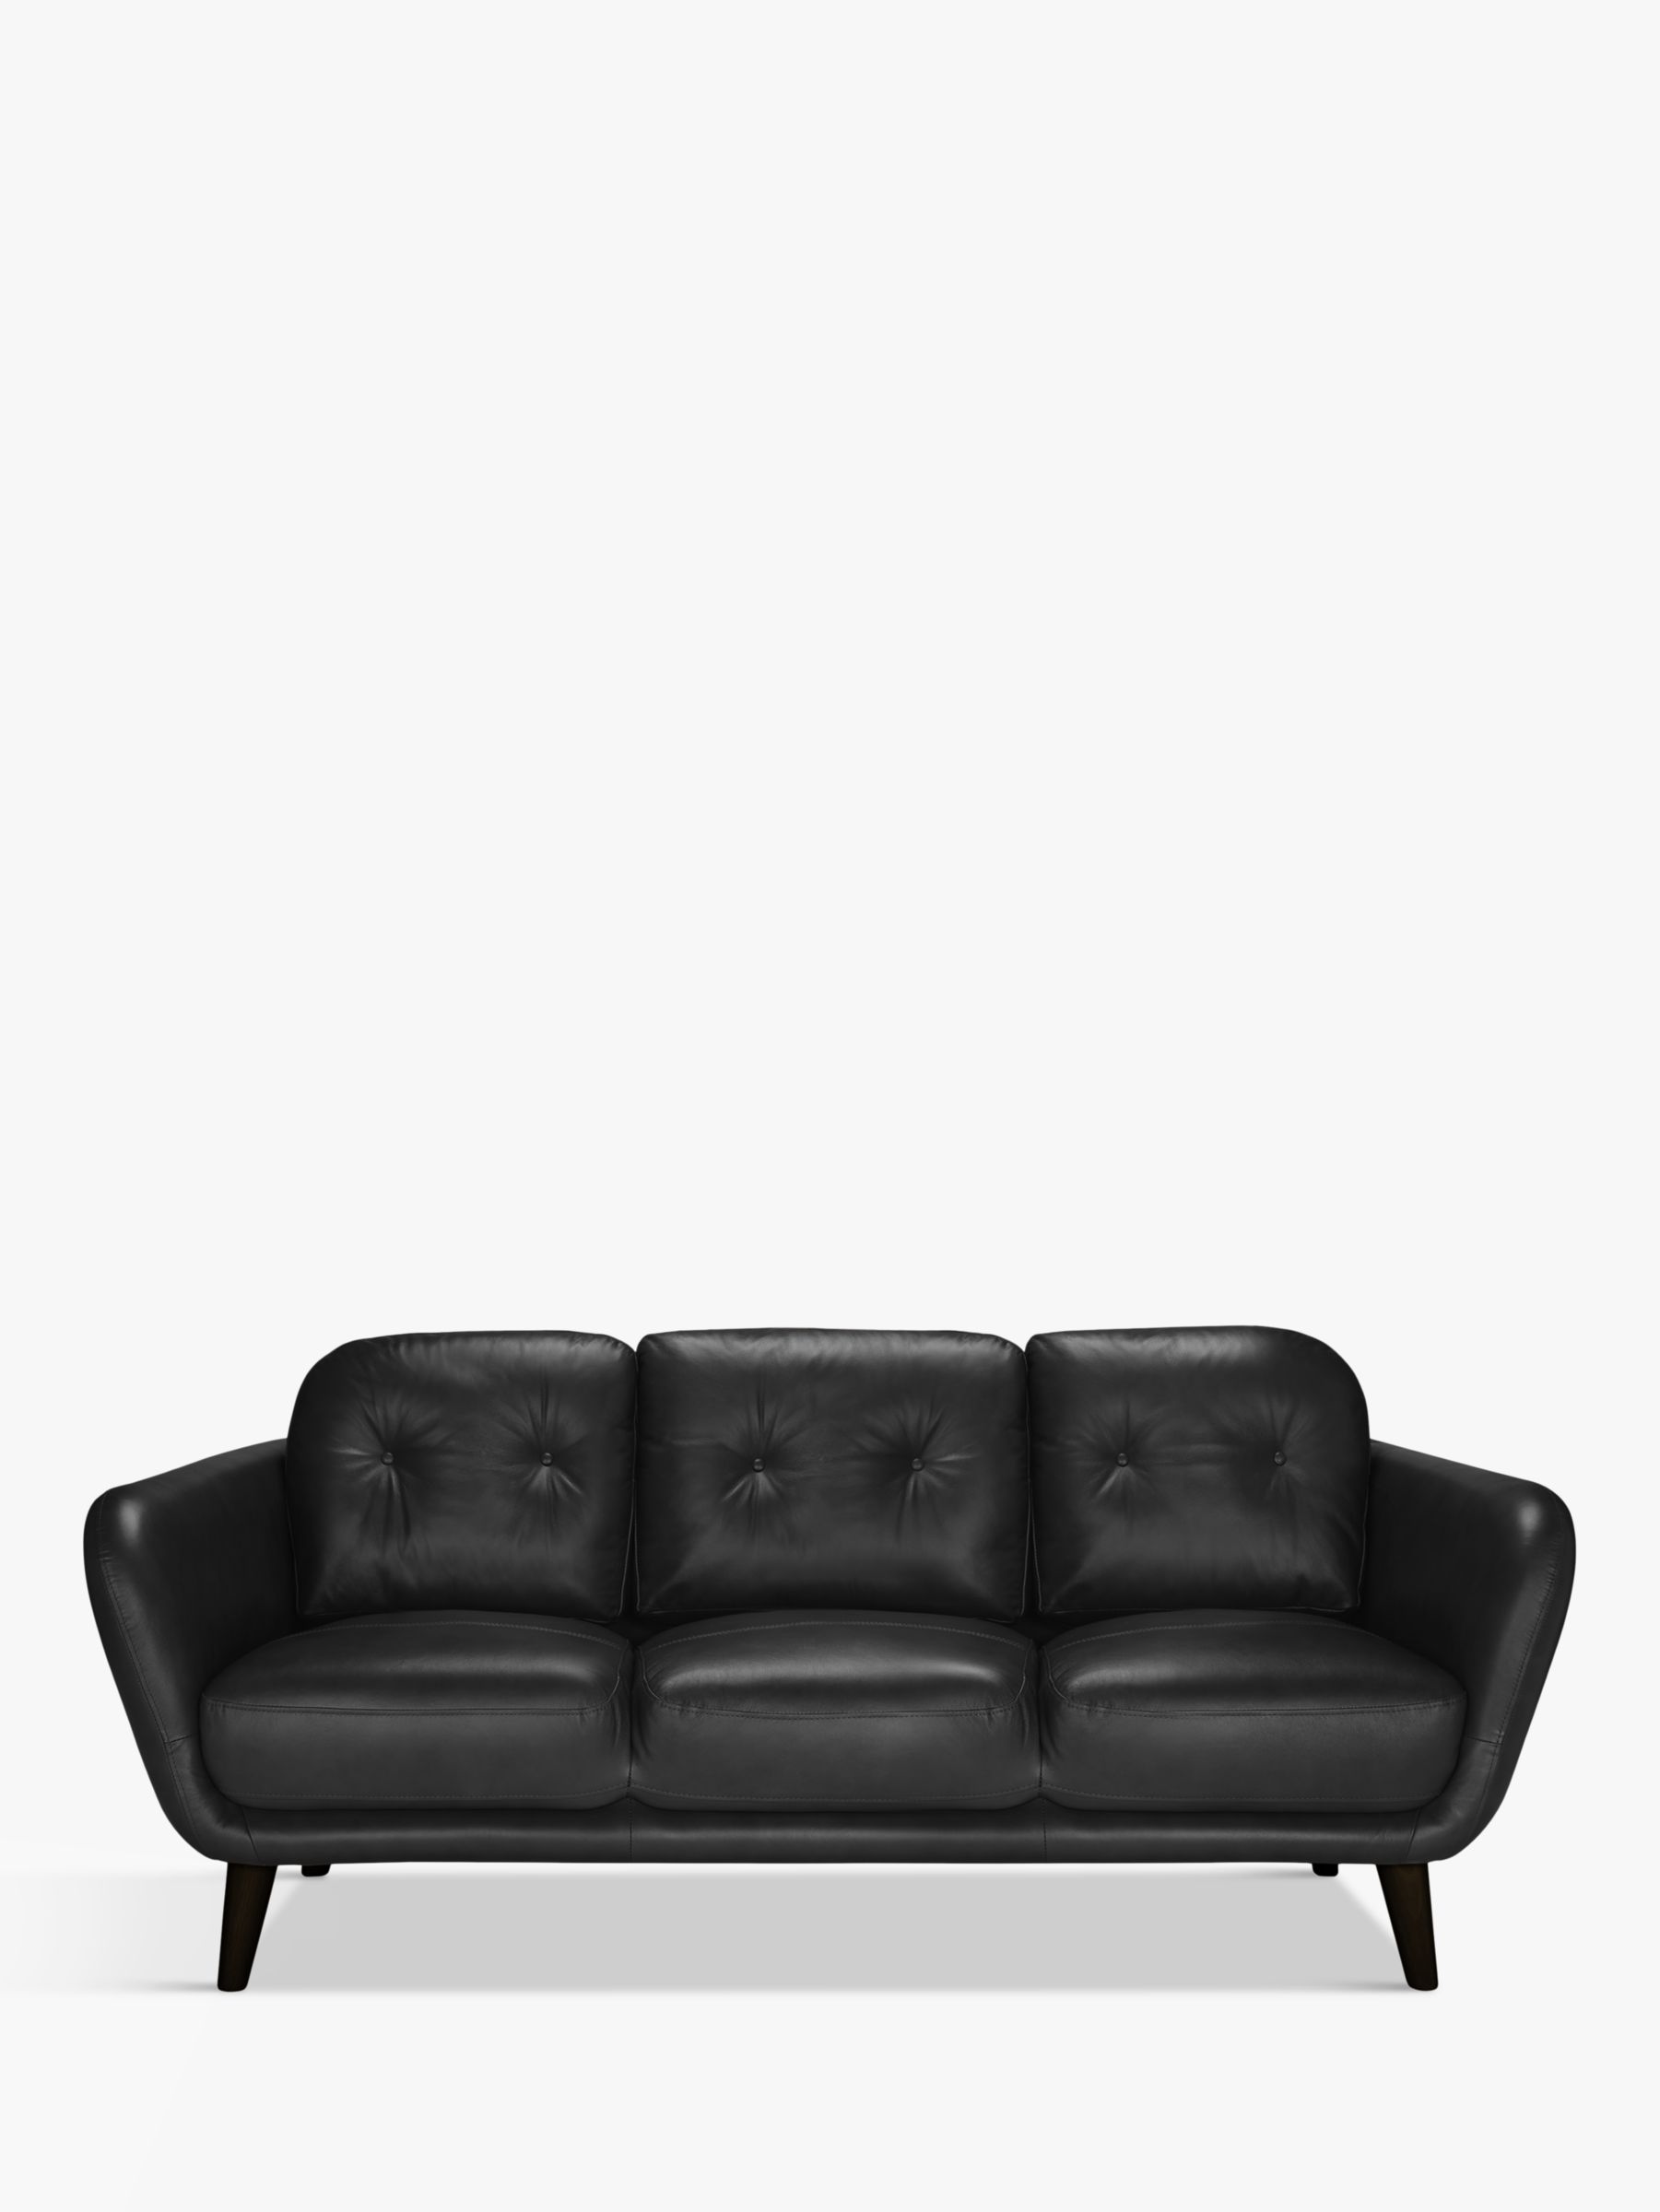 John Lewis Arlo Large 3 Seater Leather Sofa, Dark Leg